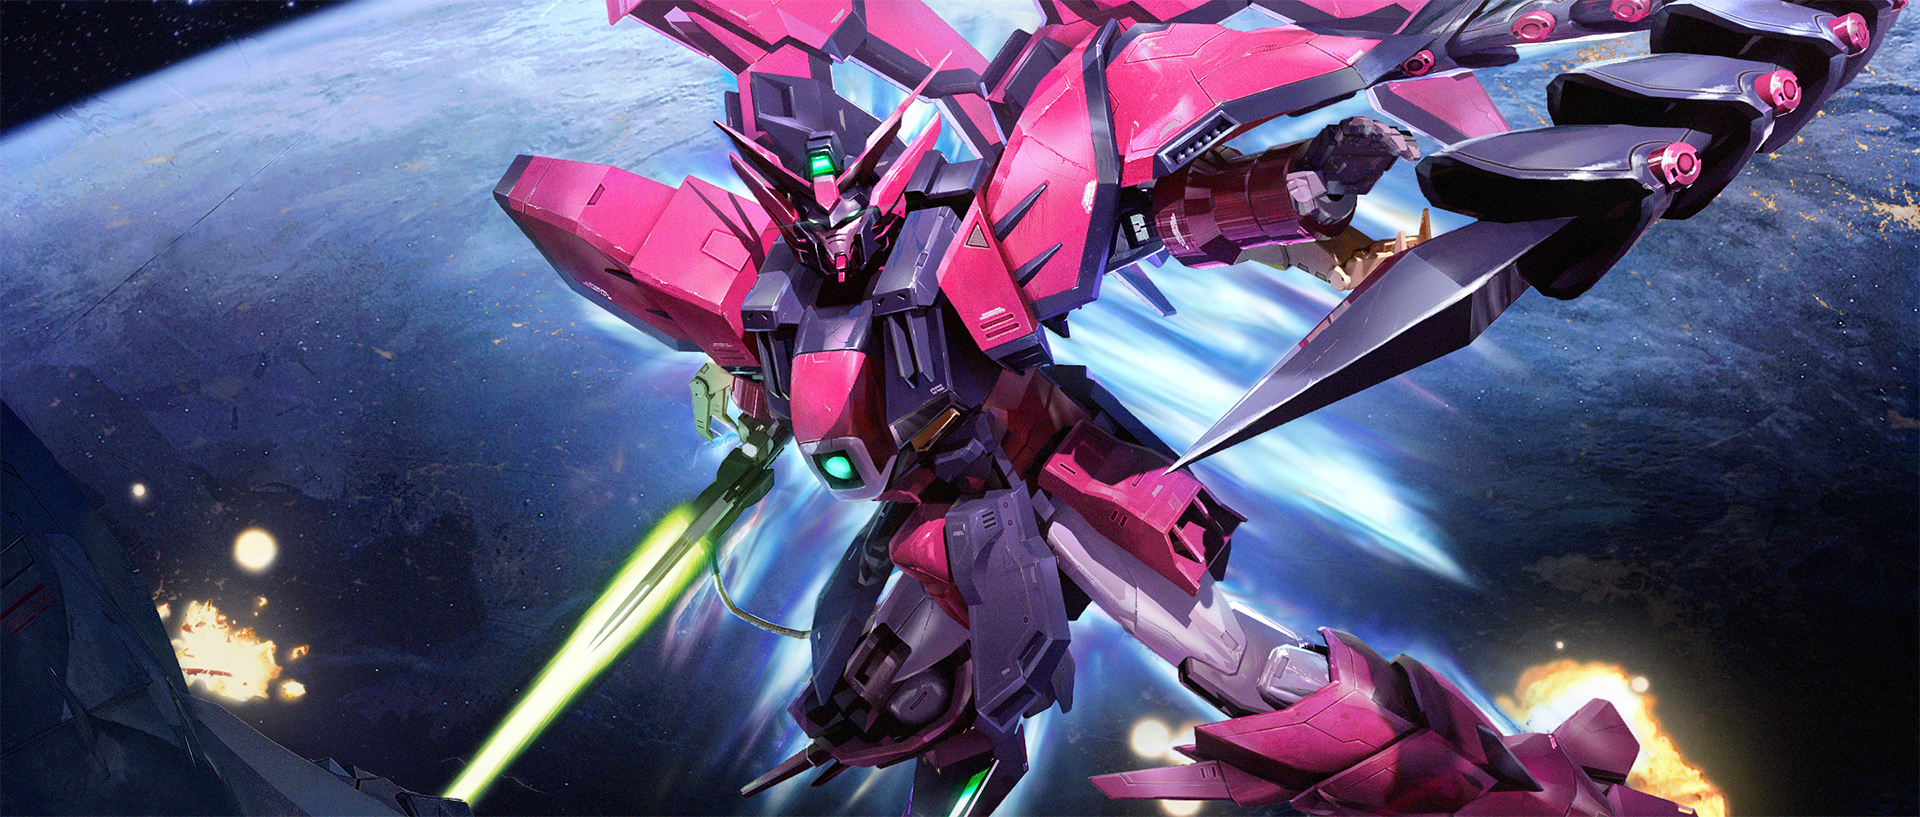 Anime 1920x817 anime Gundam mechs Super Robot Taisen Mobile Suit Gundam Wing Gundam Epyon artwork digital art fan art